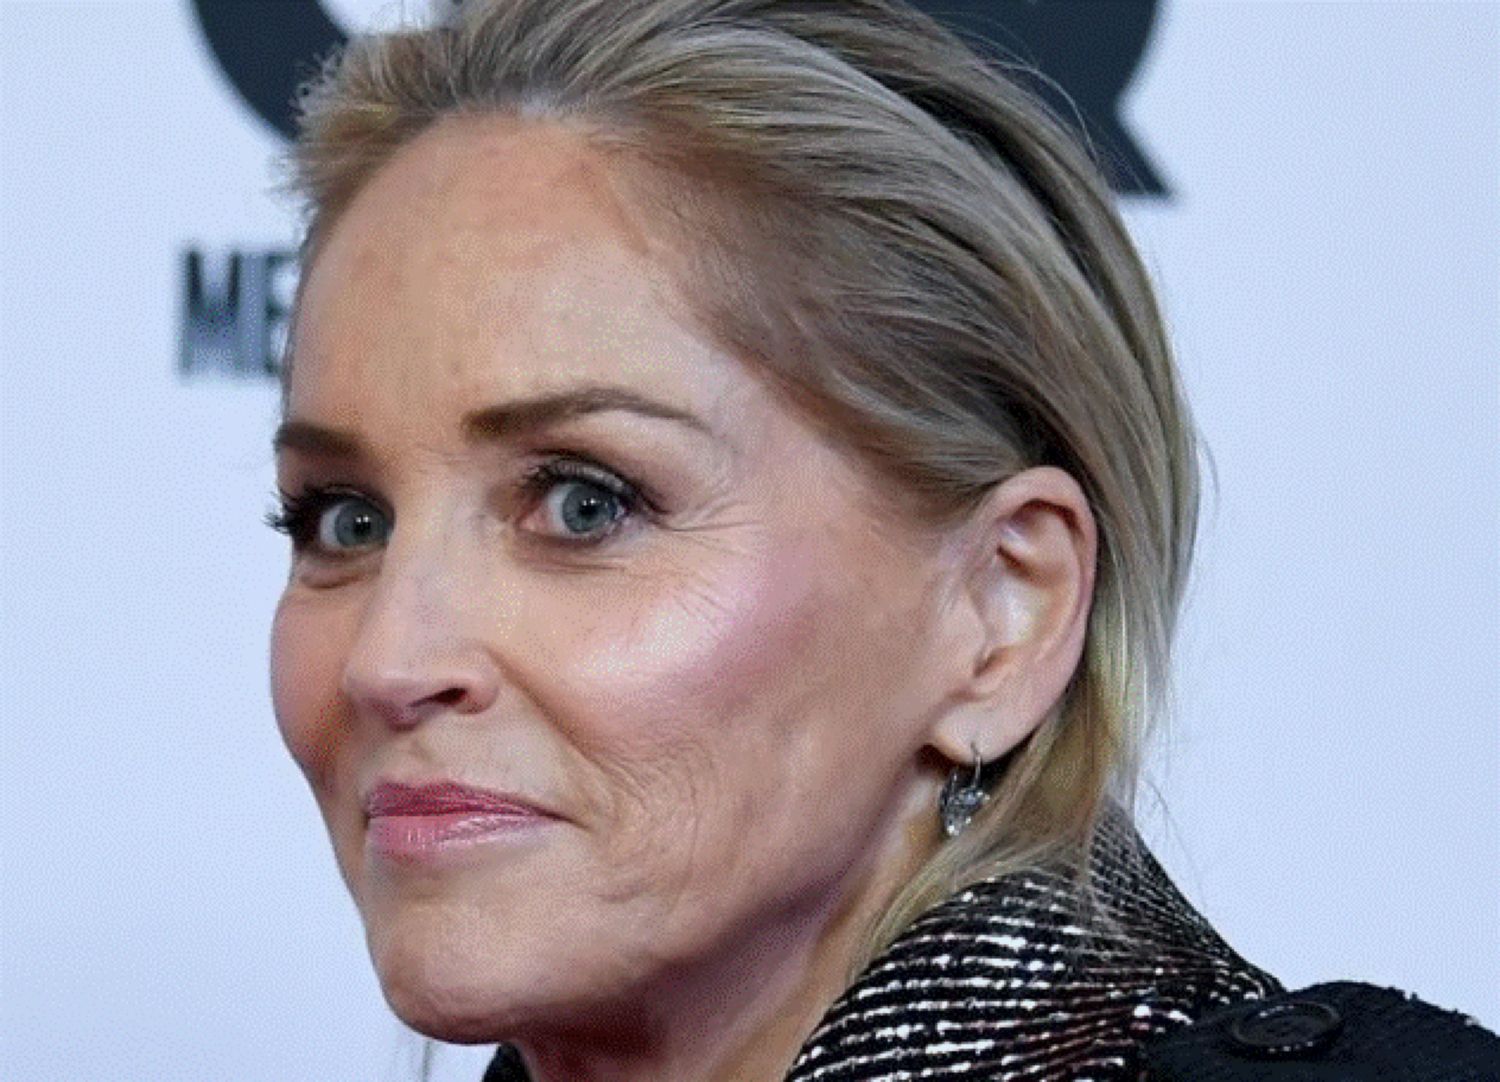 Sharon Stone a dezvăluit secretul vechi de 30 de ani. Cine e celebrul actor cu care a fost pusă să întrețină raporturi intime.